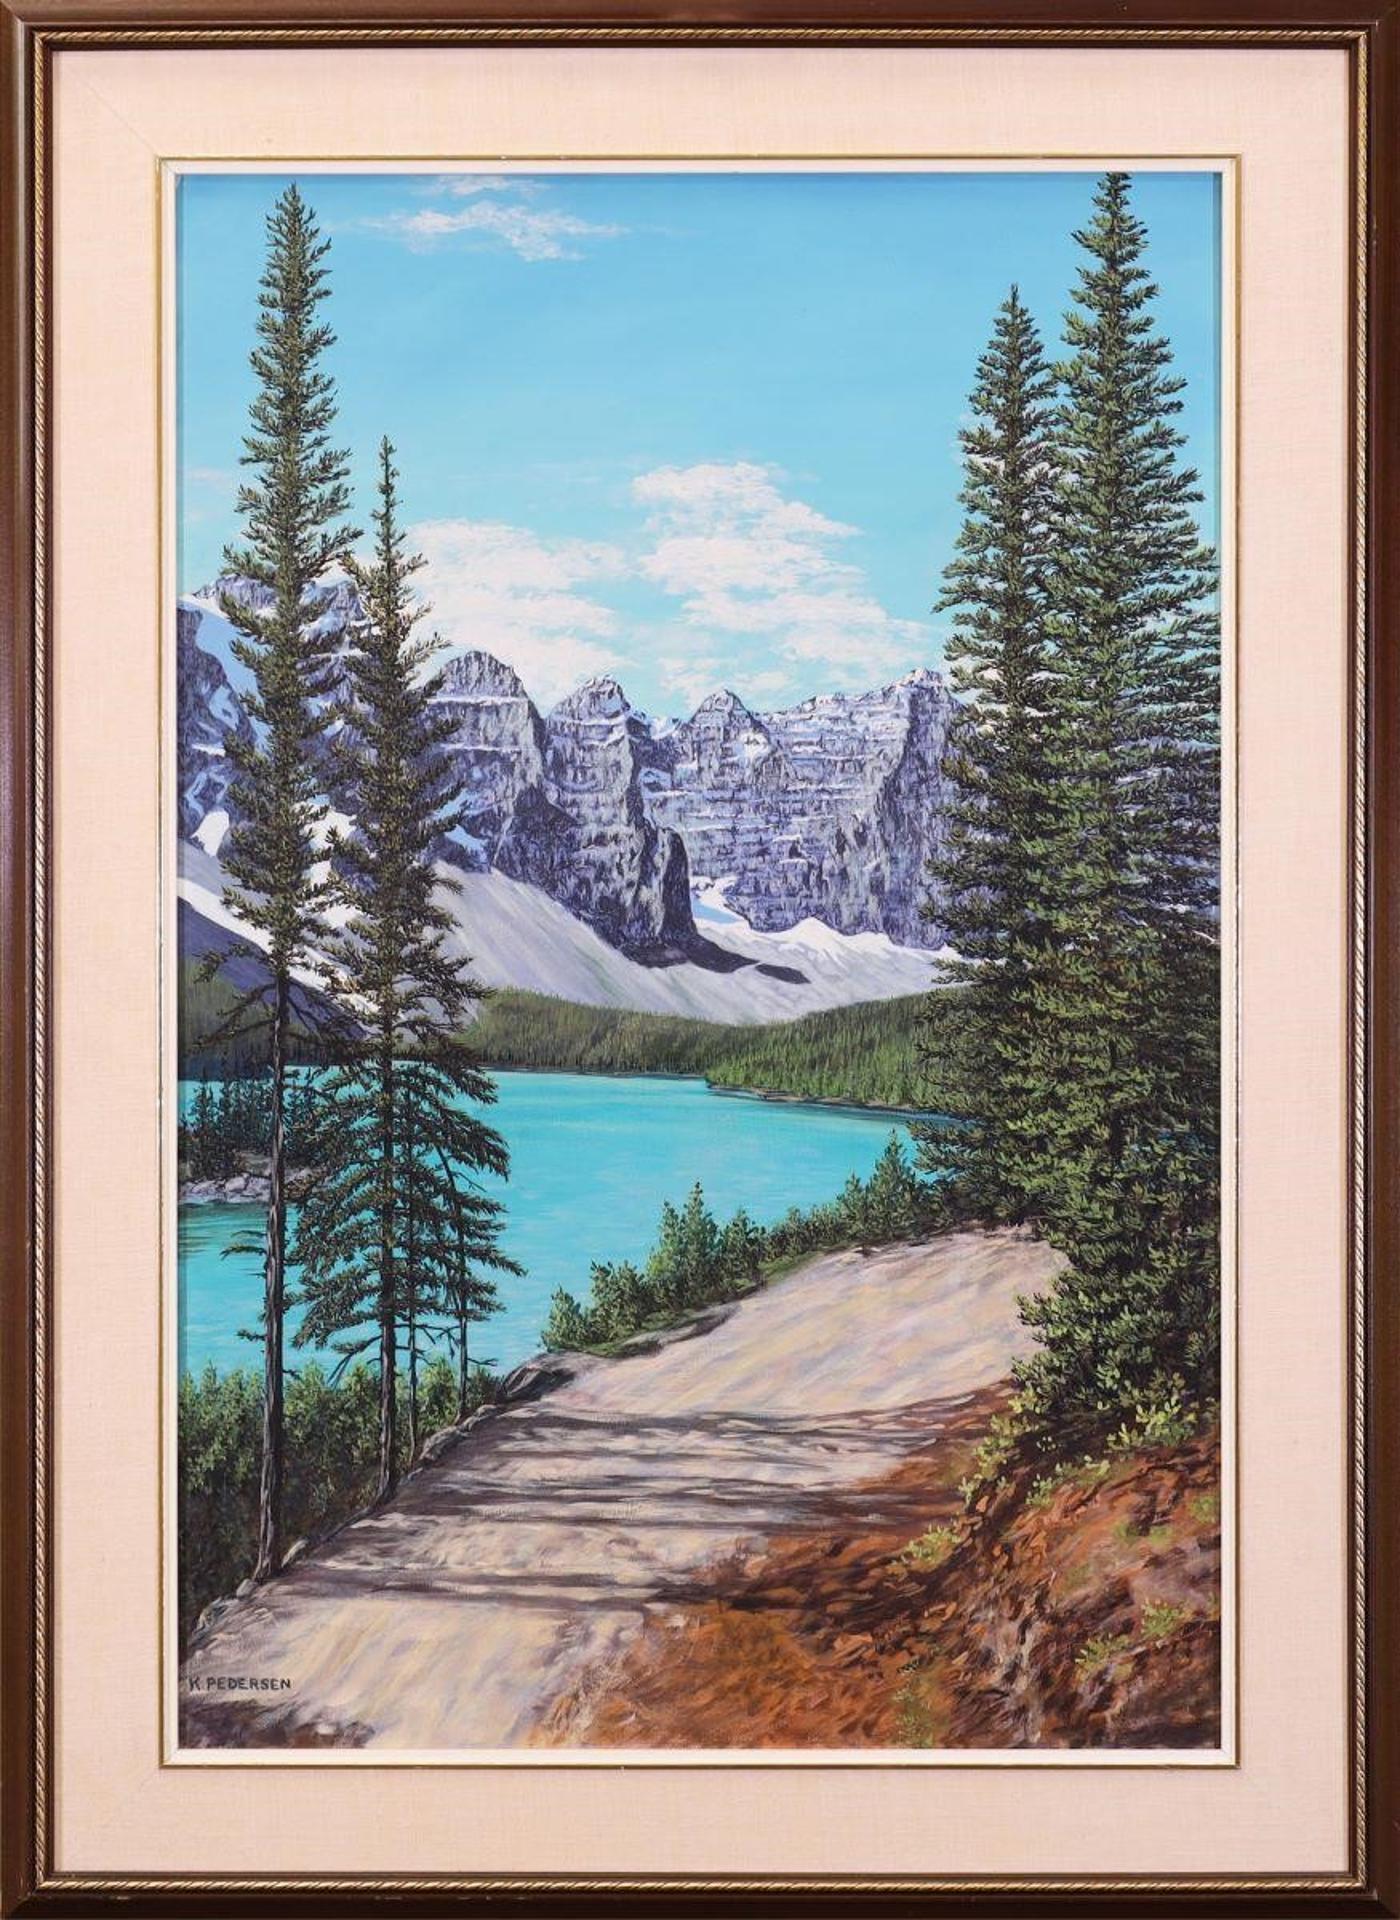 K. Pedersen - Untitled; Glacial Lake in the Rockies